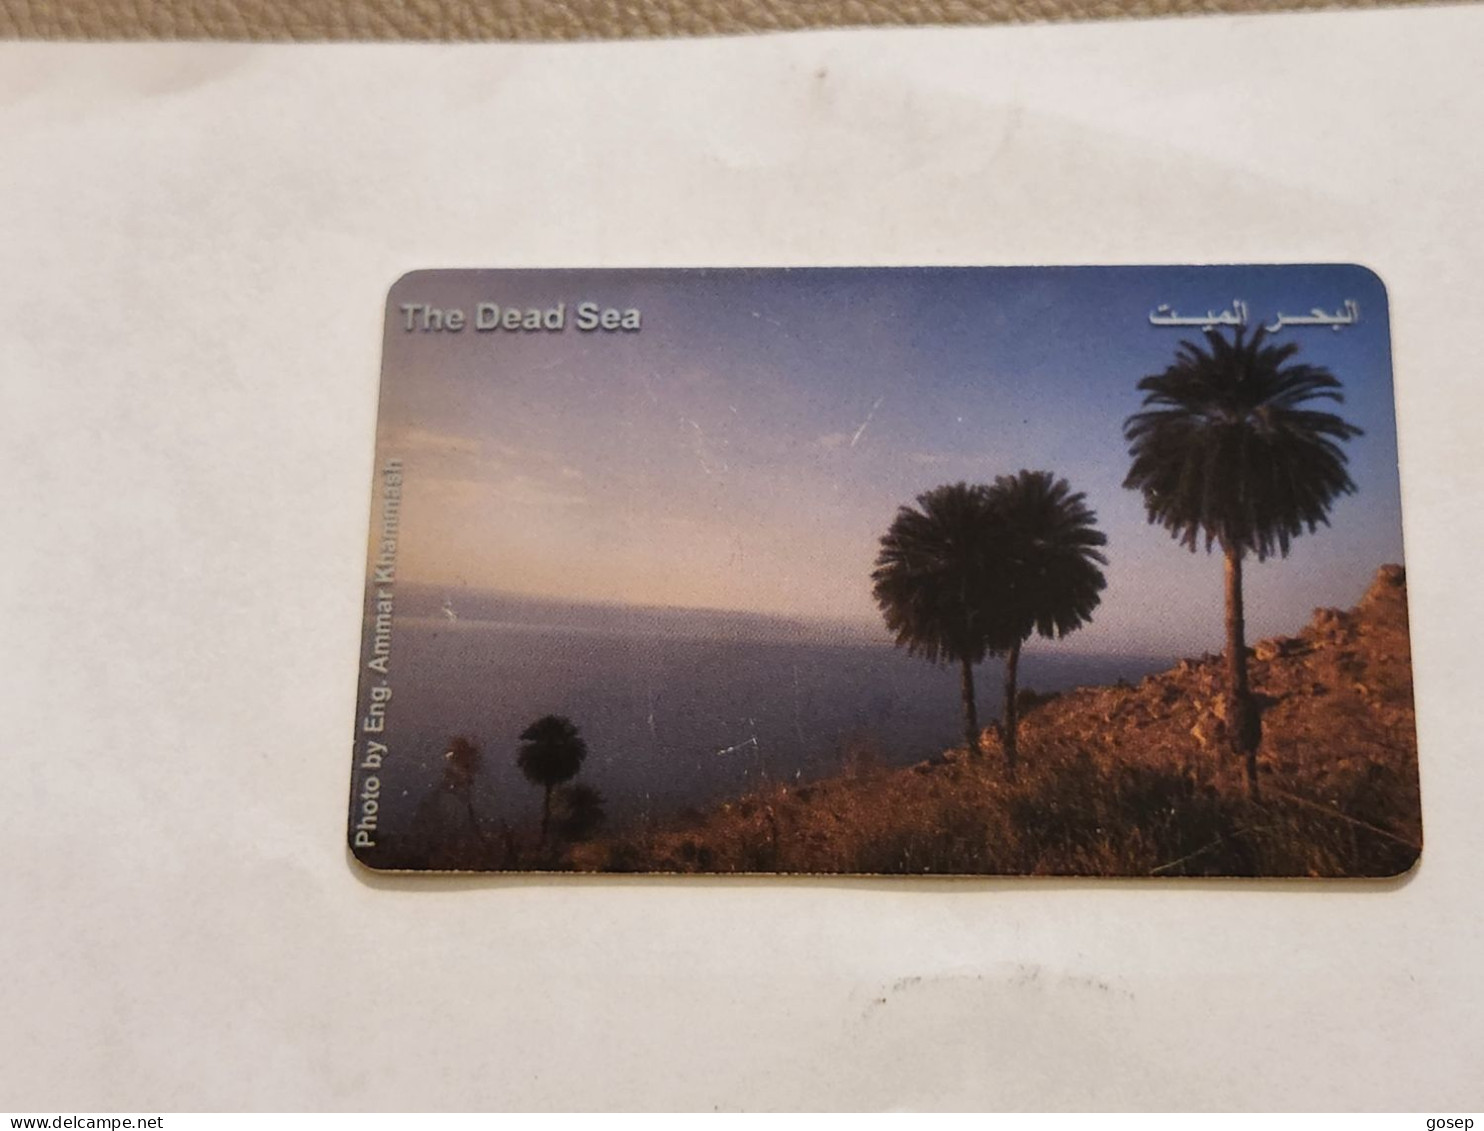 JORDAN-(JO-ALO-0082)-The Dead Sea-(204)-(4100-244178)-(3JD)-(06/2001)-used Card+1card Prepiad Free - Jordanien